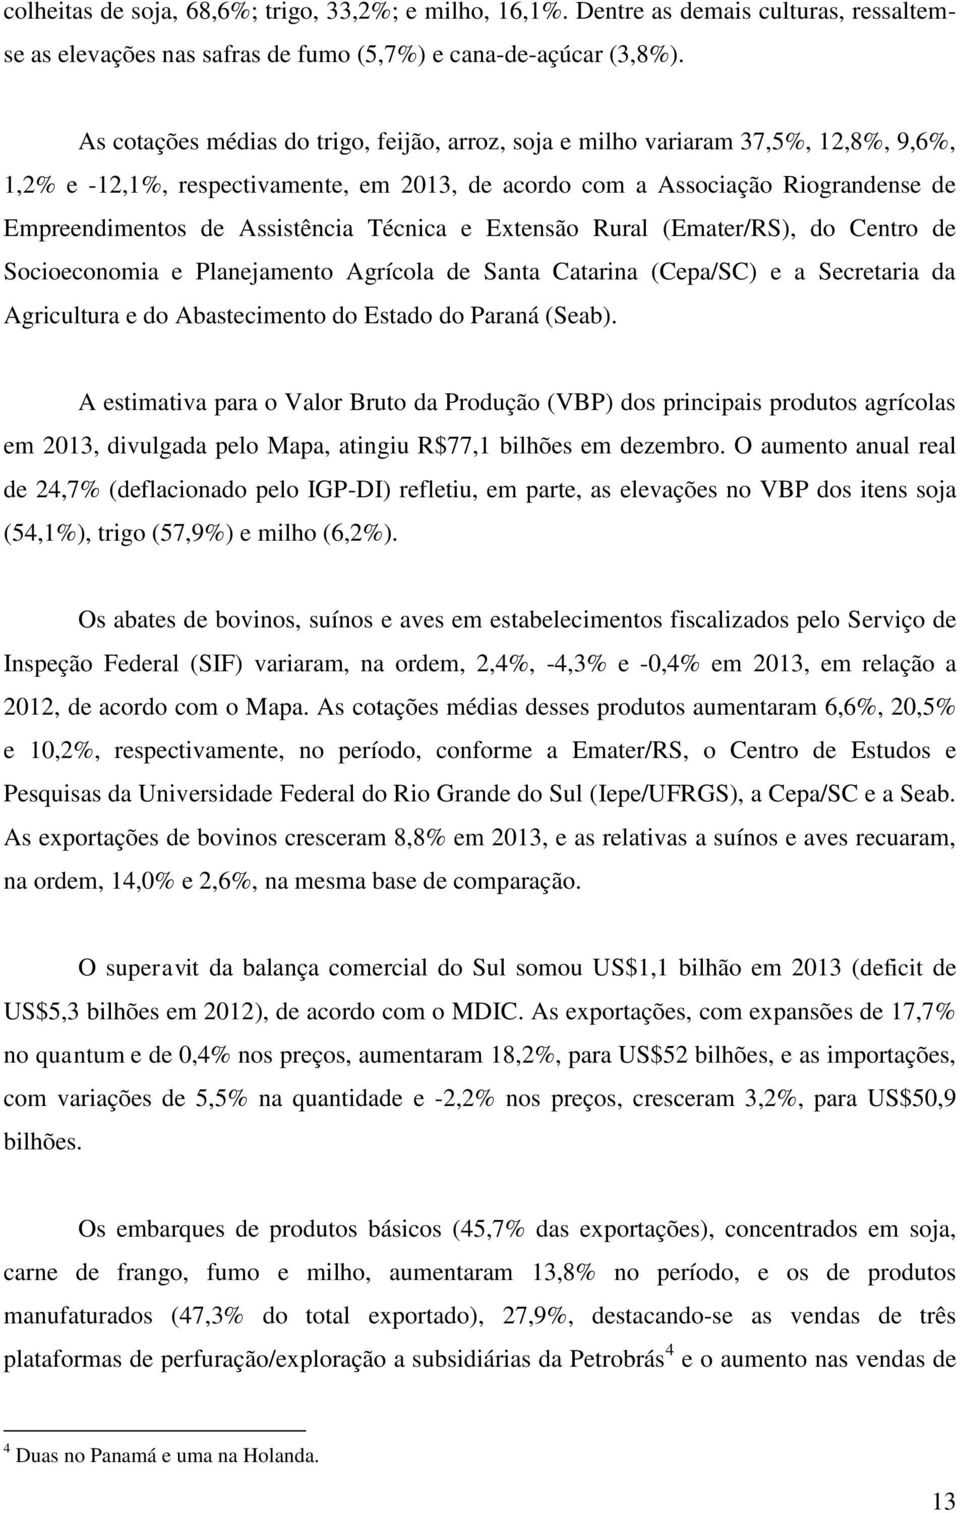 Assistência Técnica e Extensão Rural (Emater/RS), do Centro de Socioeconomia e Planejamento Agrícola de Santa Catarina (Cepa/SC) e a Secretaria da Agricultura e do Abastecimento do Estado do Paraná